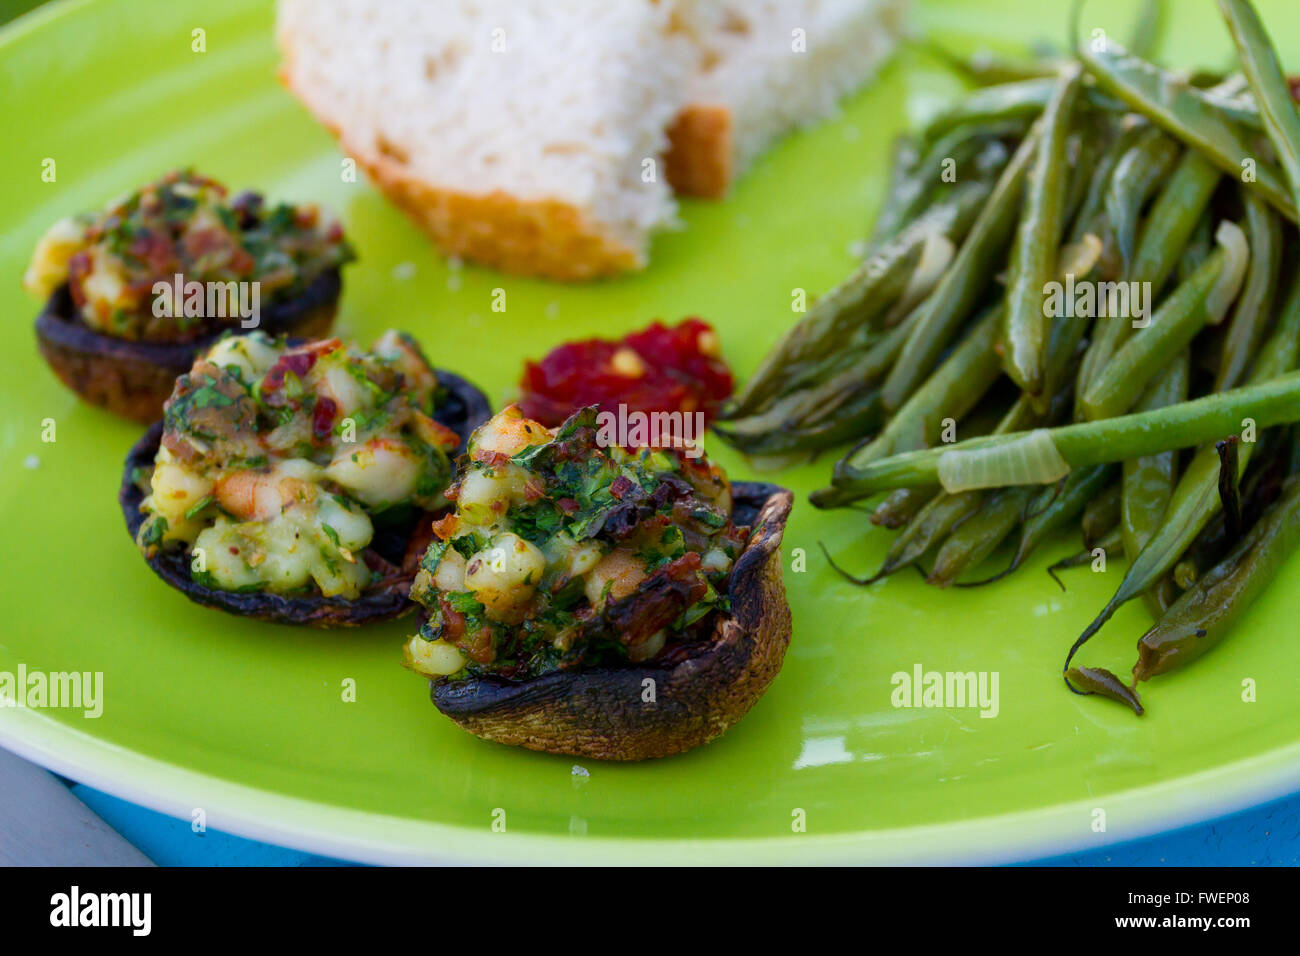 Questo pasto gourmet di Funghi ripieni e fagioli verdi servita su una piastra verde con un po' di pane bianco. Questa è la cena ma l'IMA Foto Stock